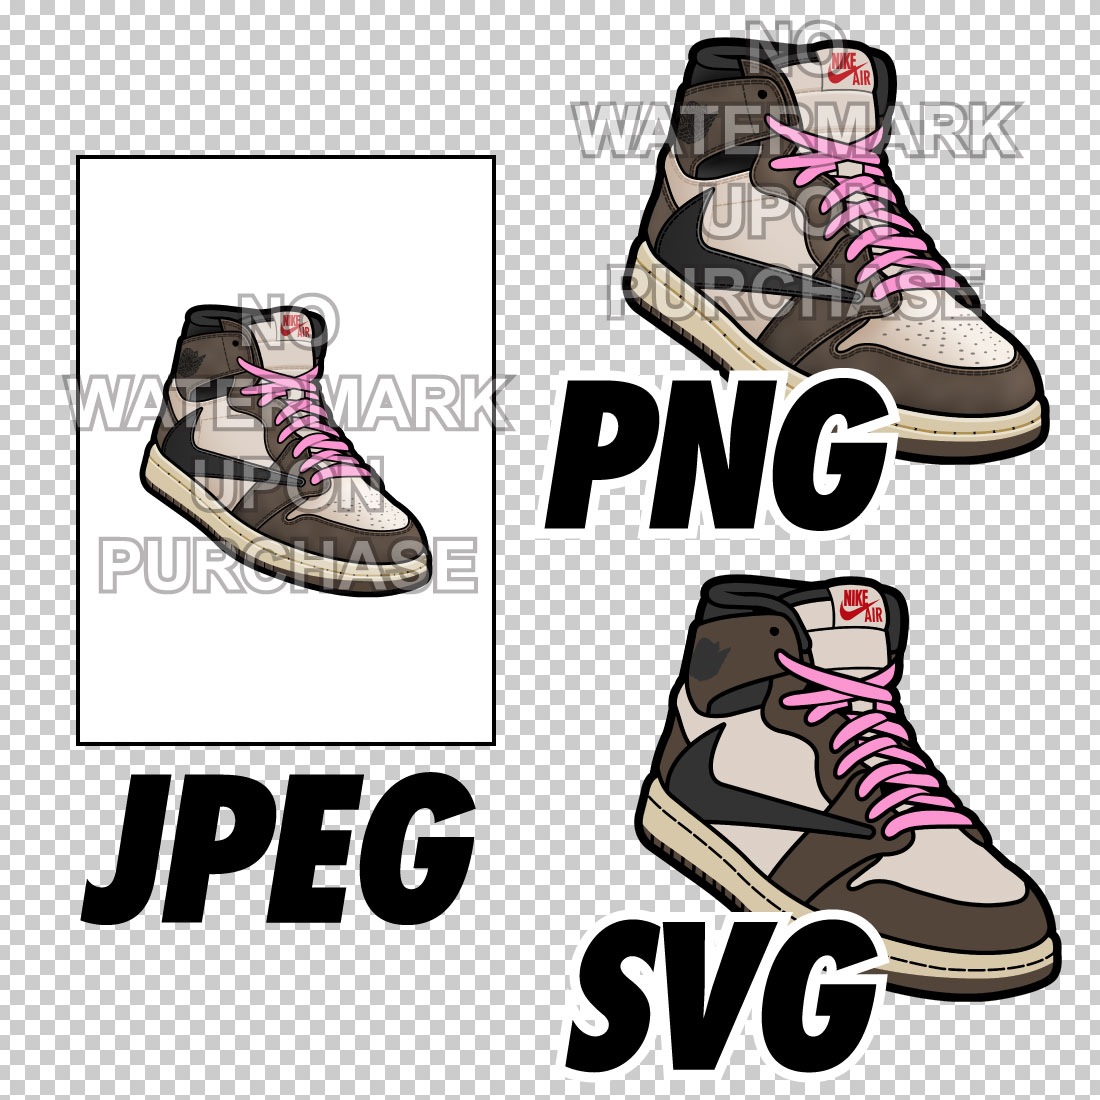 Air Jordan 1 Travis Scott JPEG PNG SVG right & left shoe bundle preview image.